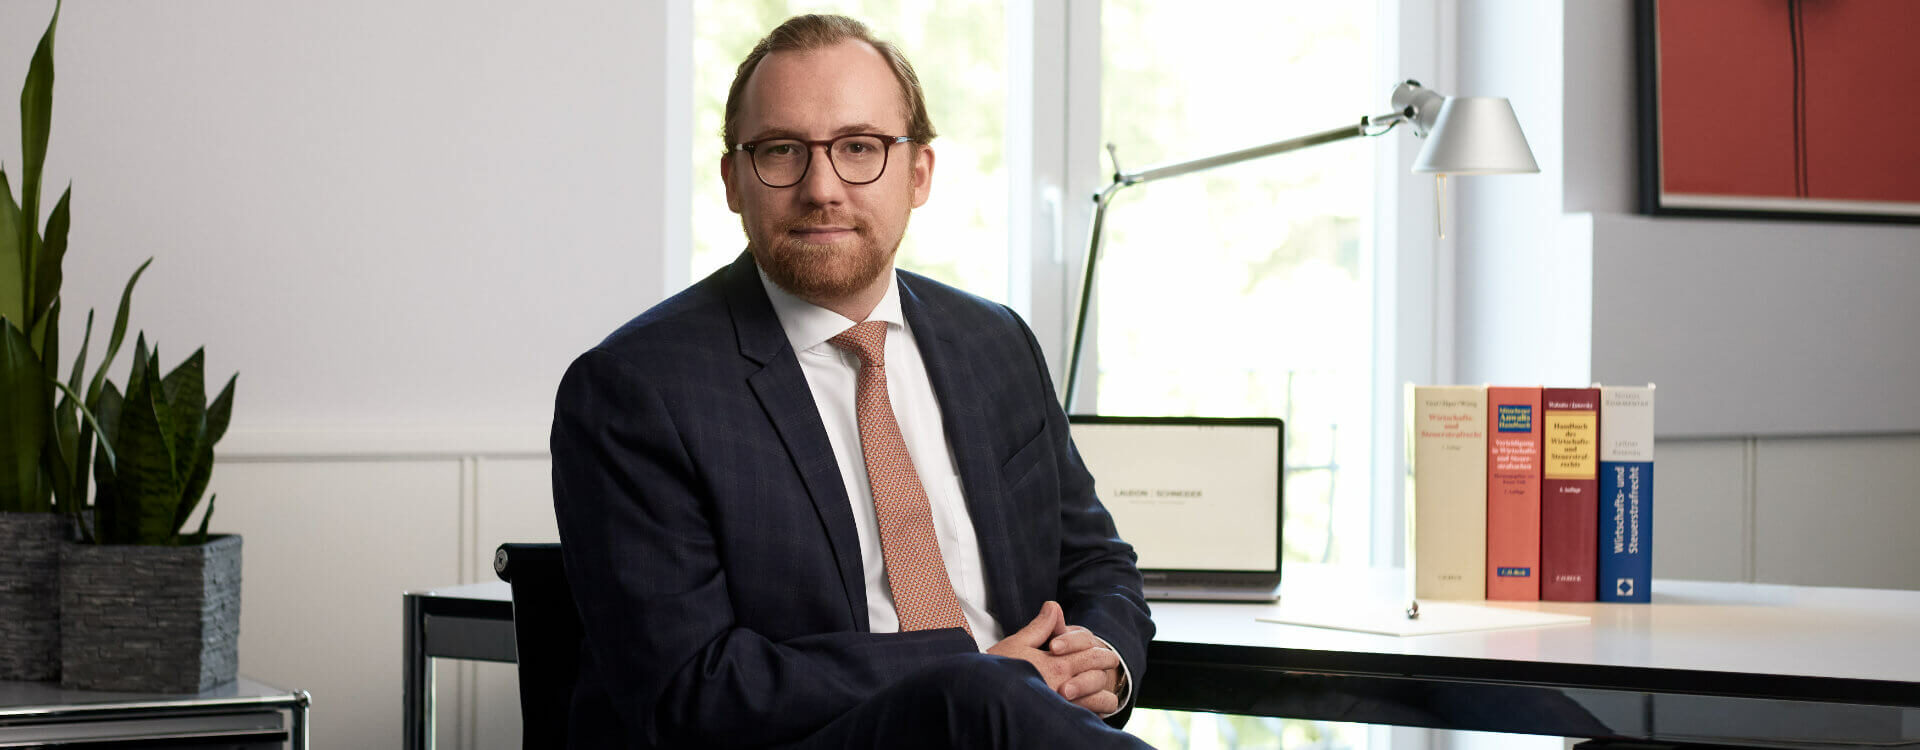 Rechtsanwalt Maximilian Hänle, Strafverteidiger Hamburg bei LAUDON SCHNEIDER Strafverteidigung